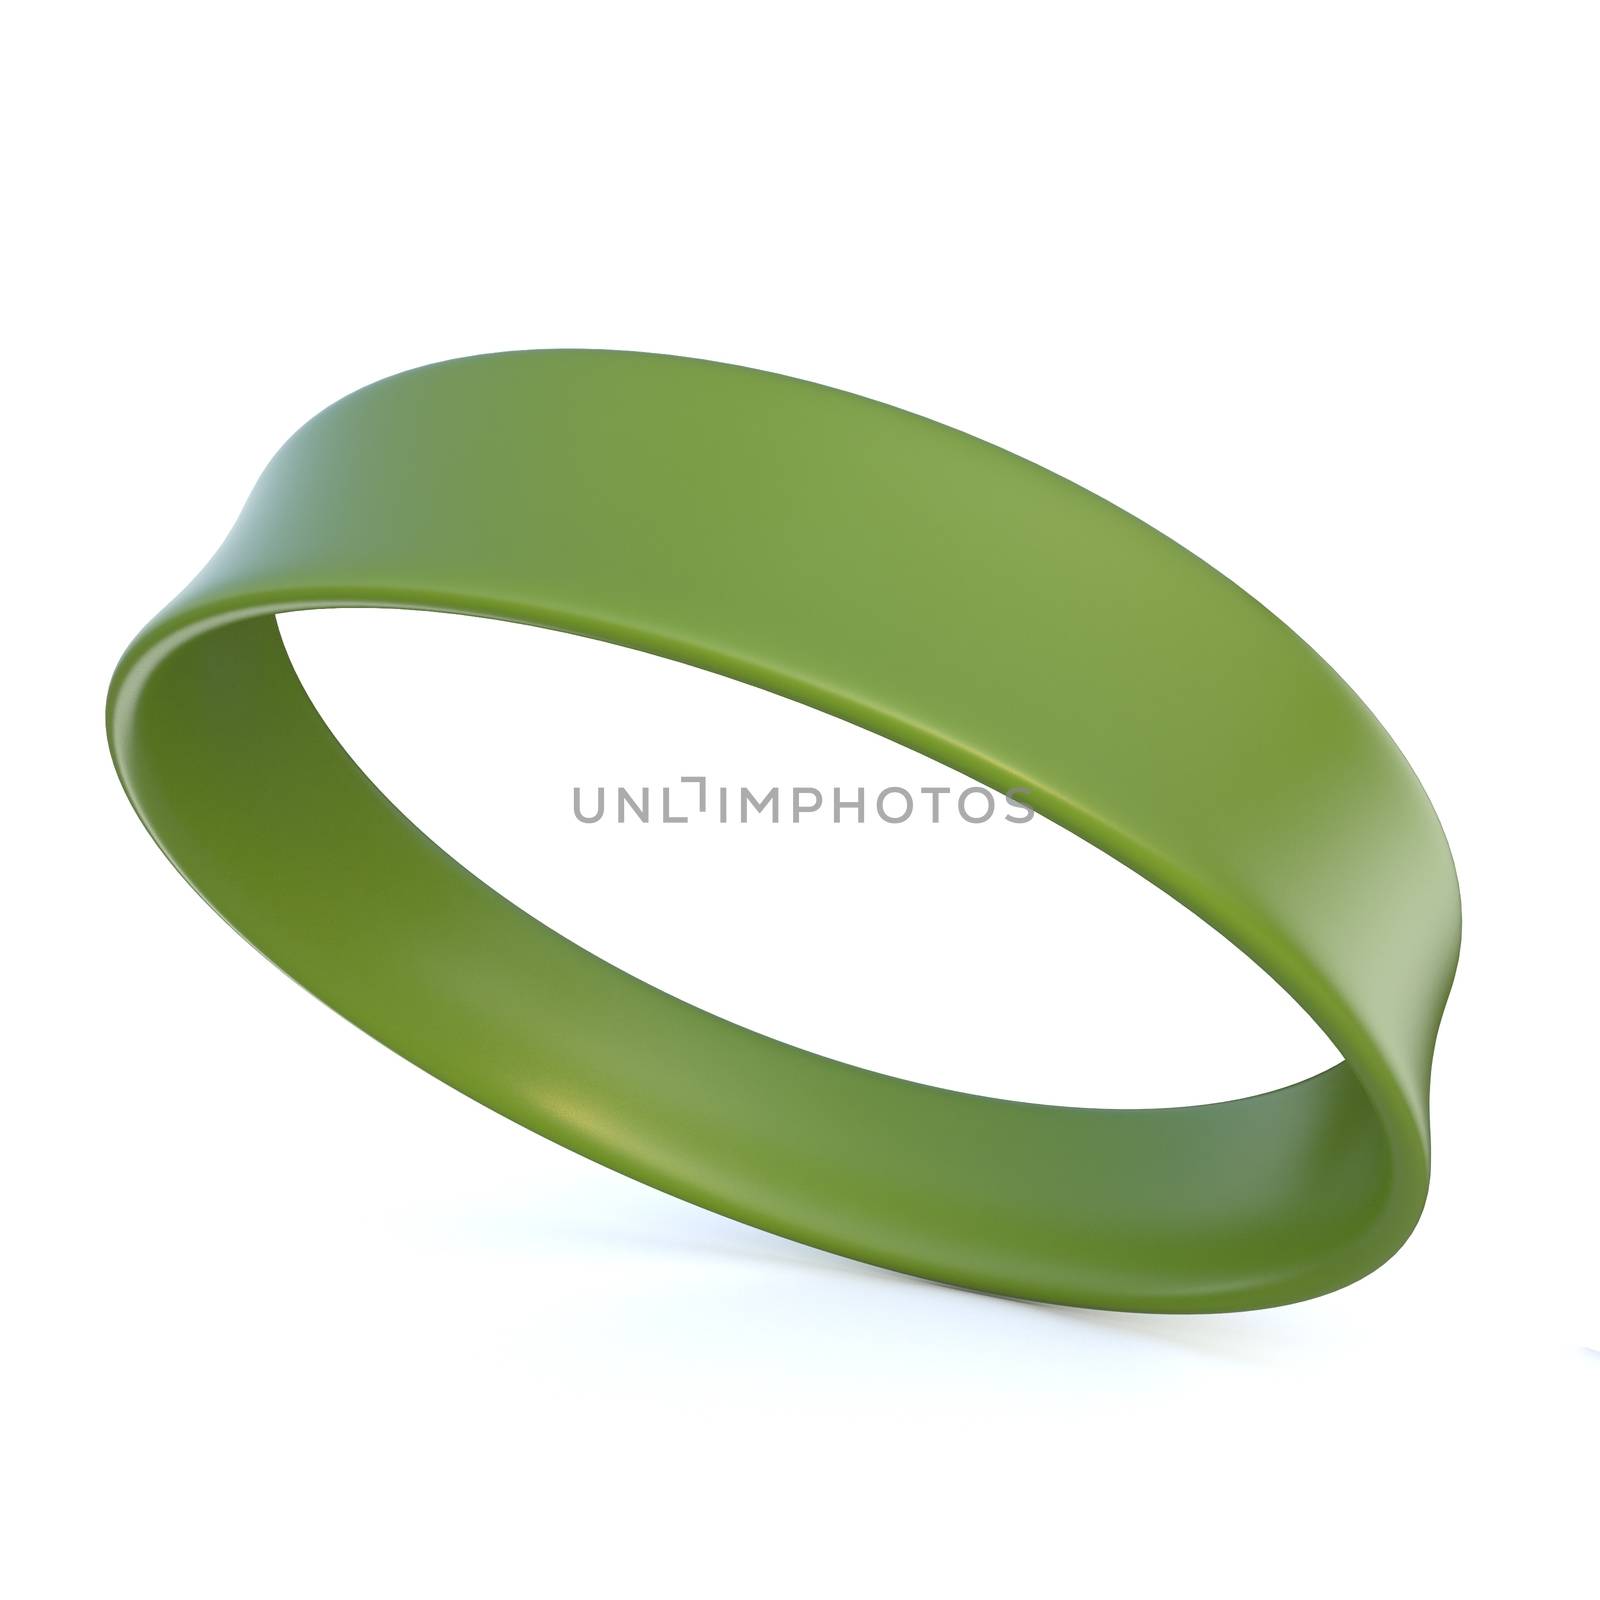 Green rubber bracelet. 3D render illustration isolated on white background